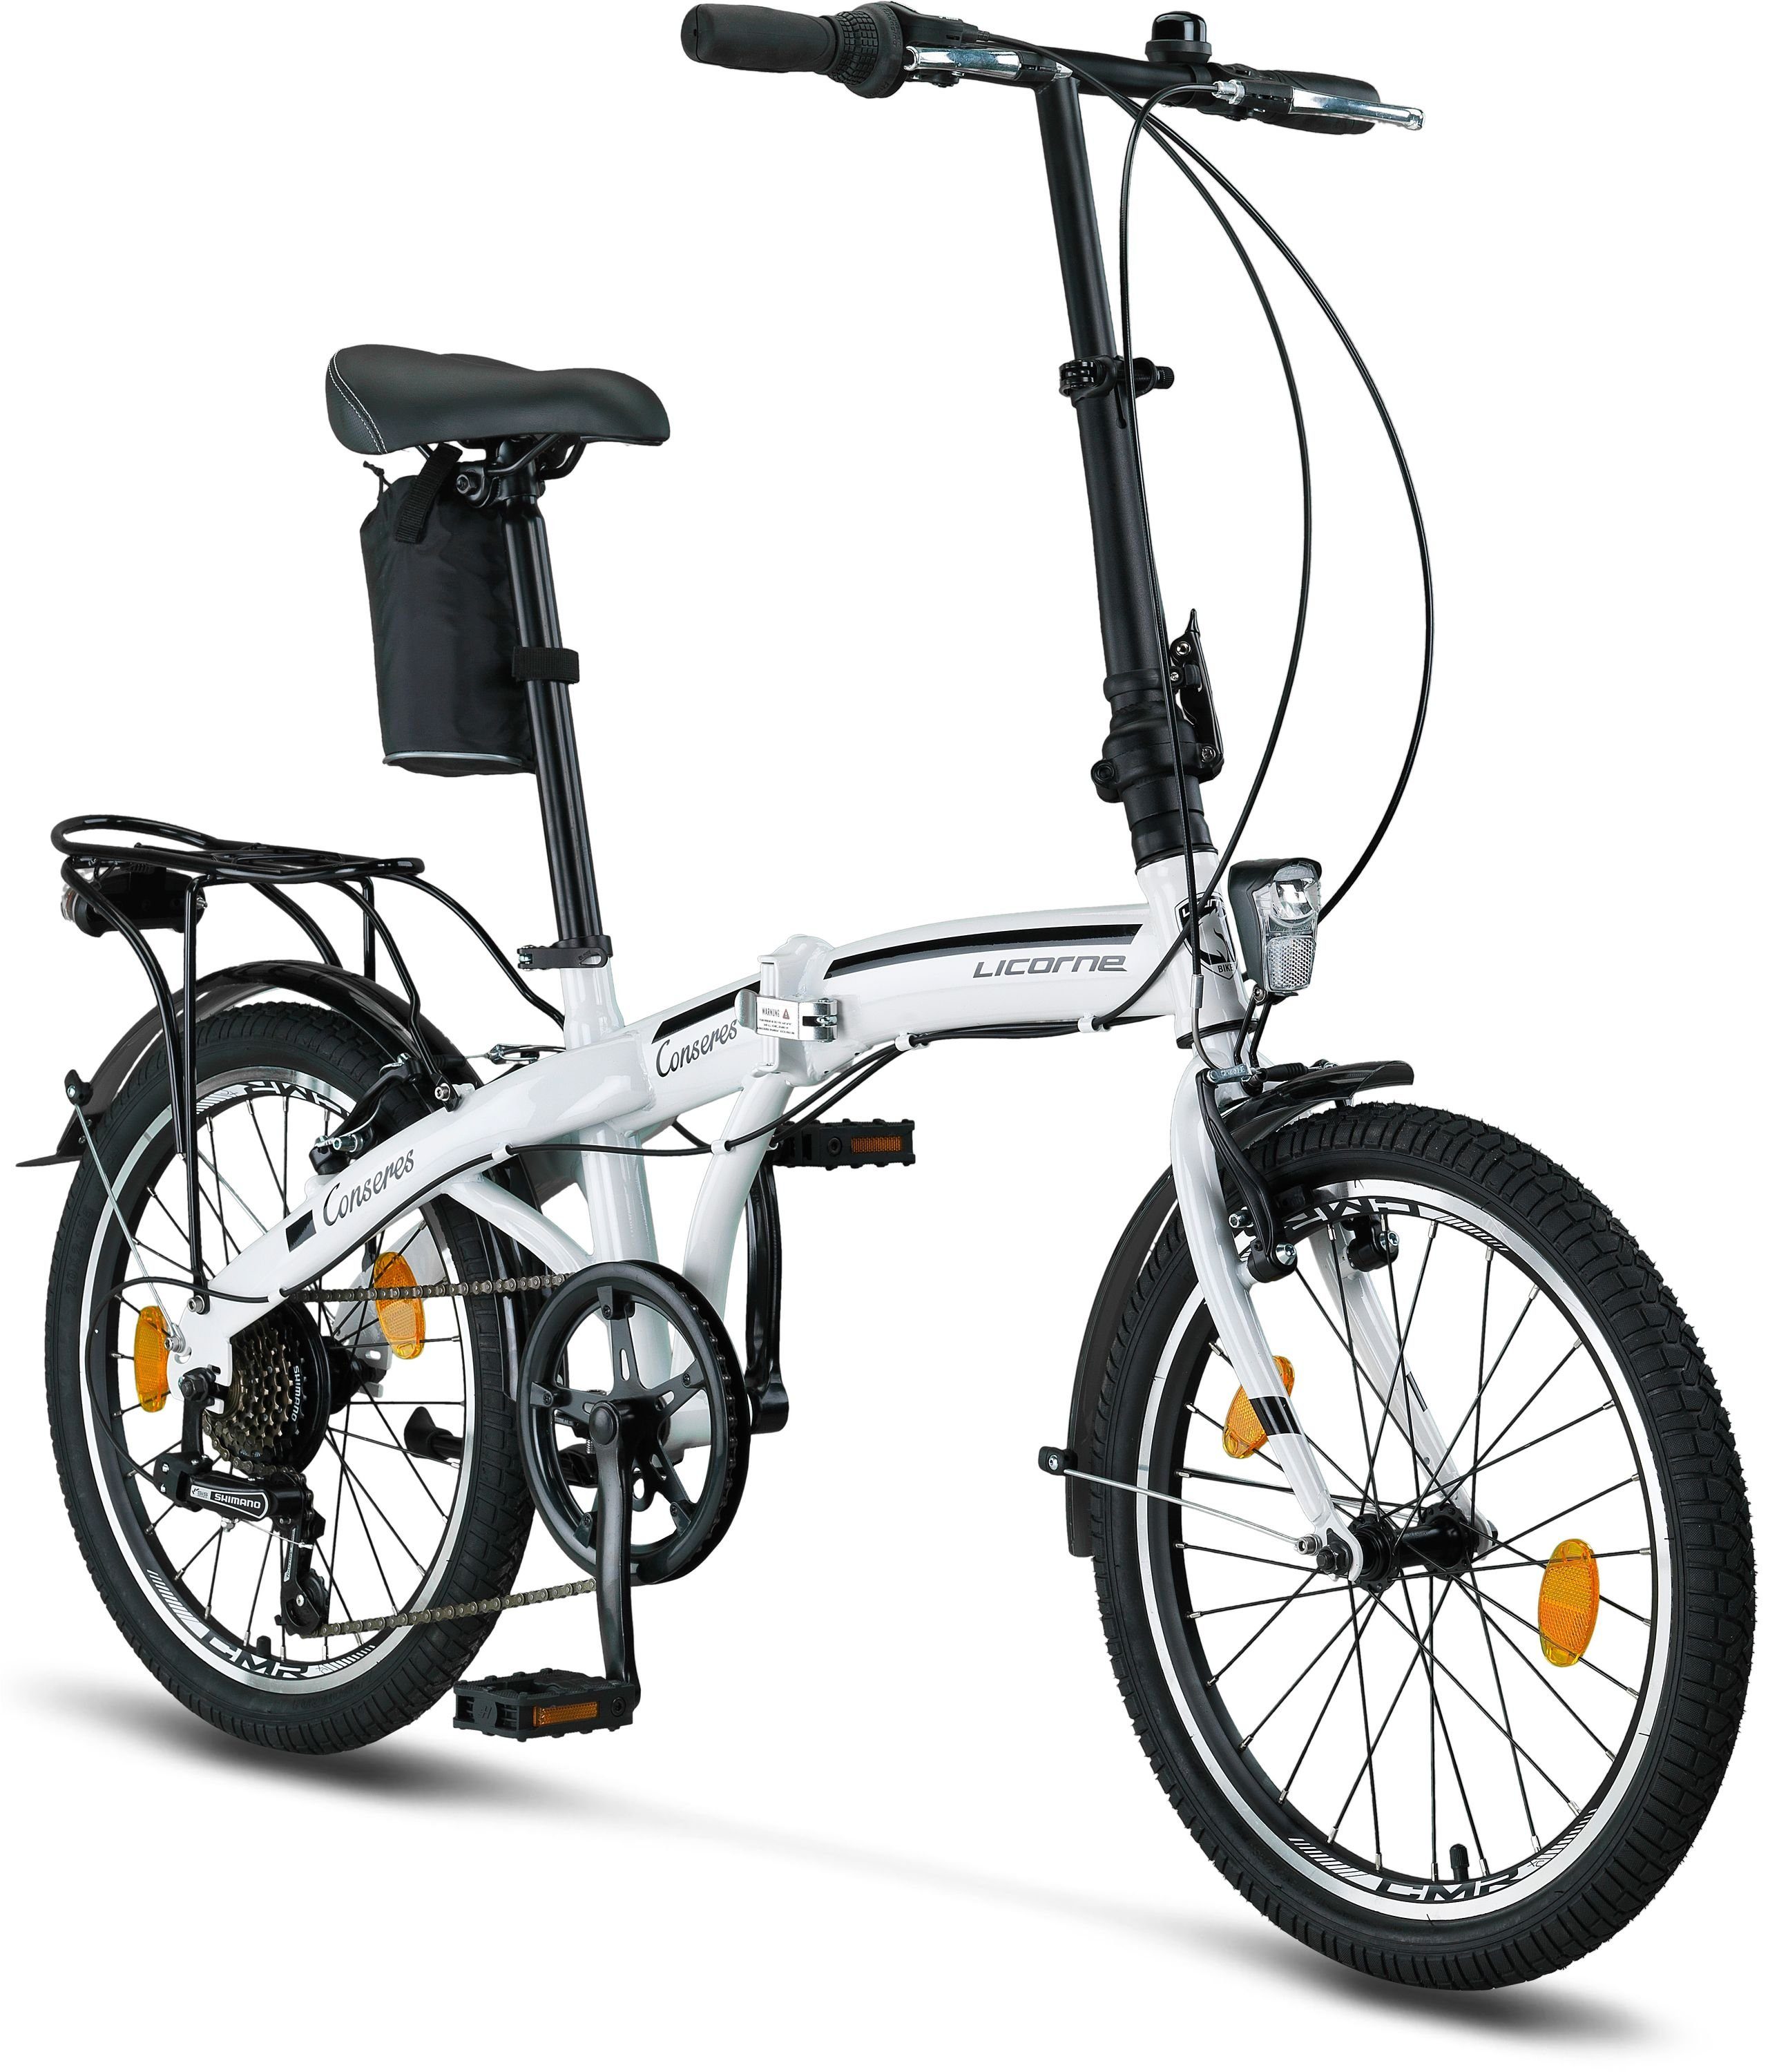 Licorne Bike Klapprad »Licorne Bike Conseres Premium Falt Bike in 20 Zoll -  Fahrrad für Herren, Jungen, Mädchen und Damen - Shimano 6 Gang-Schaltung -  Hollandfahrrad« online kaufen | OTTO